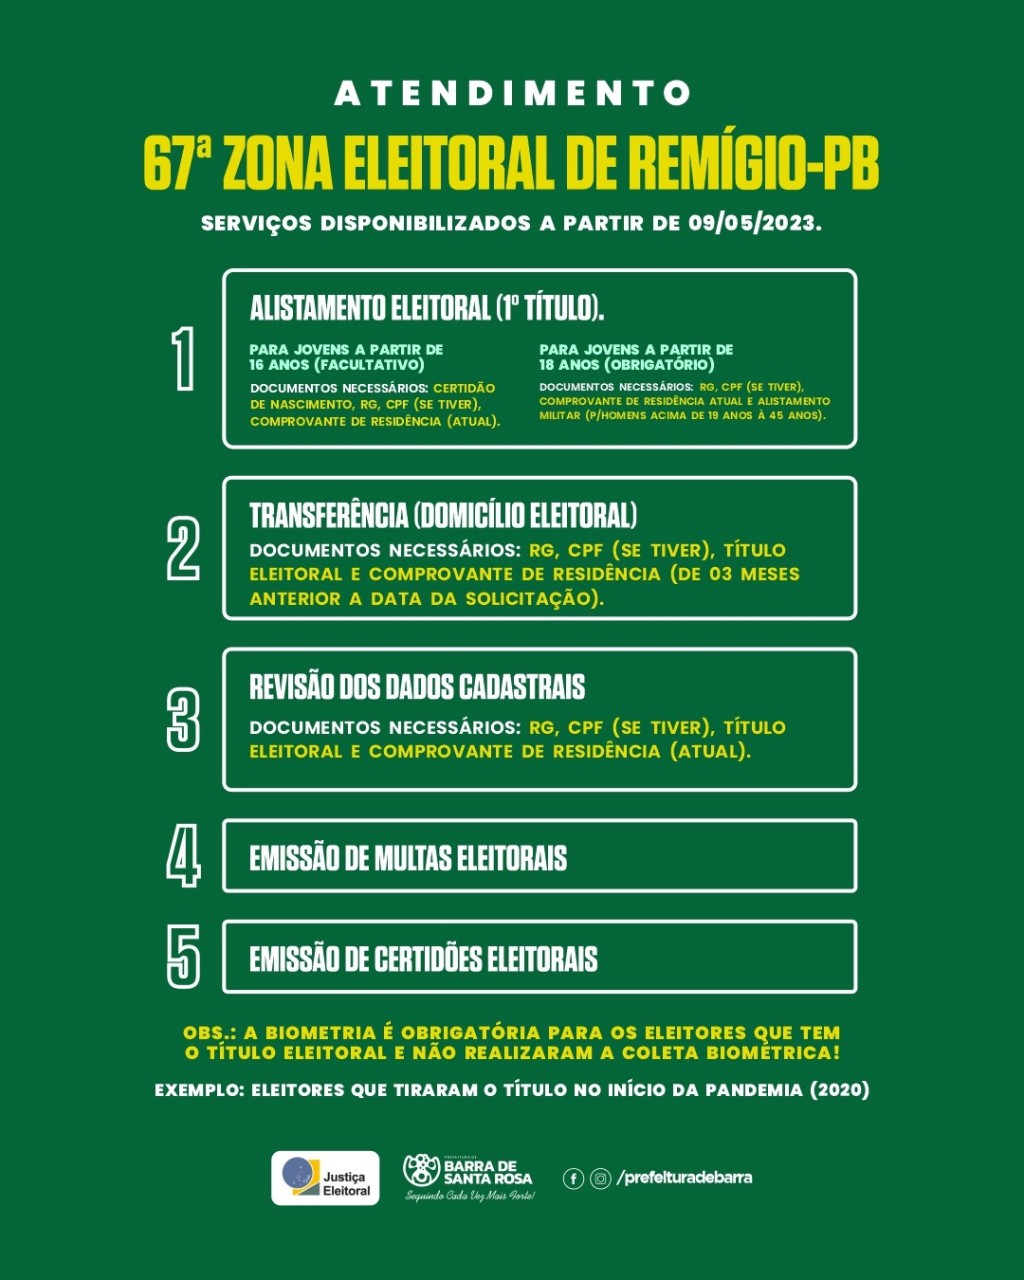 Justiça eleitoral informa sobre os serviços que estarão sendo disponibilizados na 67ª ZONA ELEITORAL DE REMÍGIO-PB